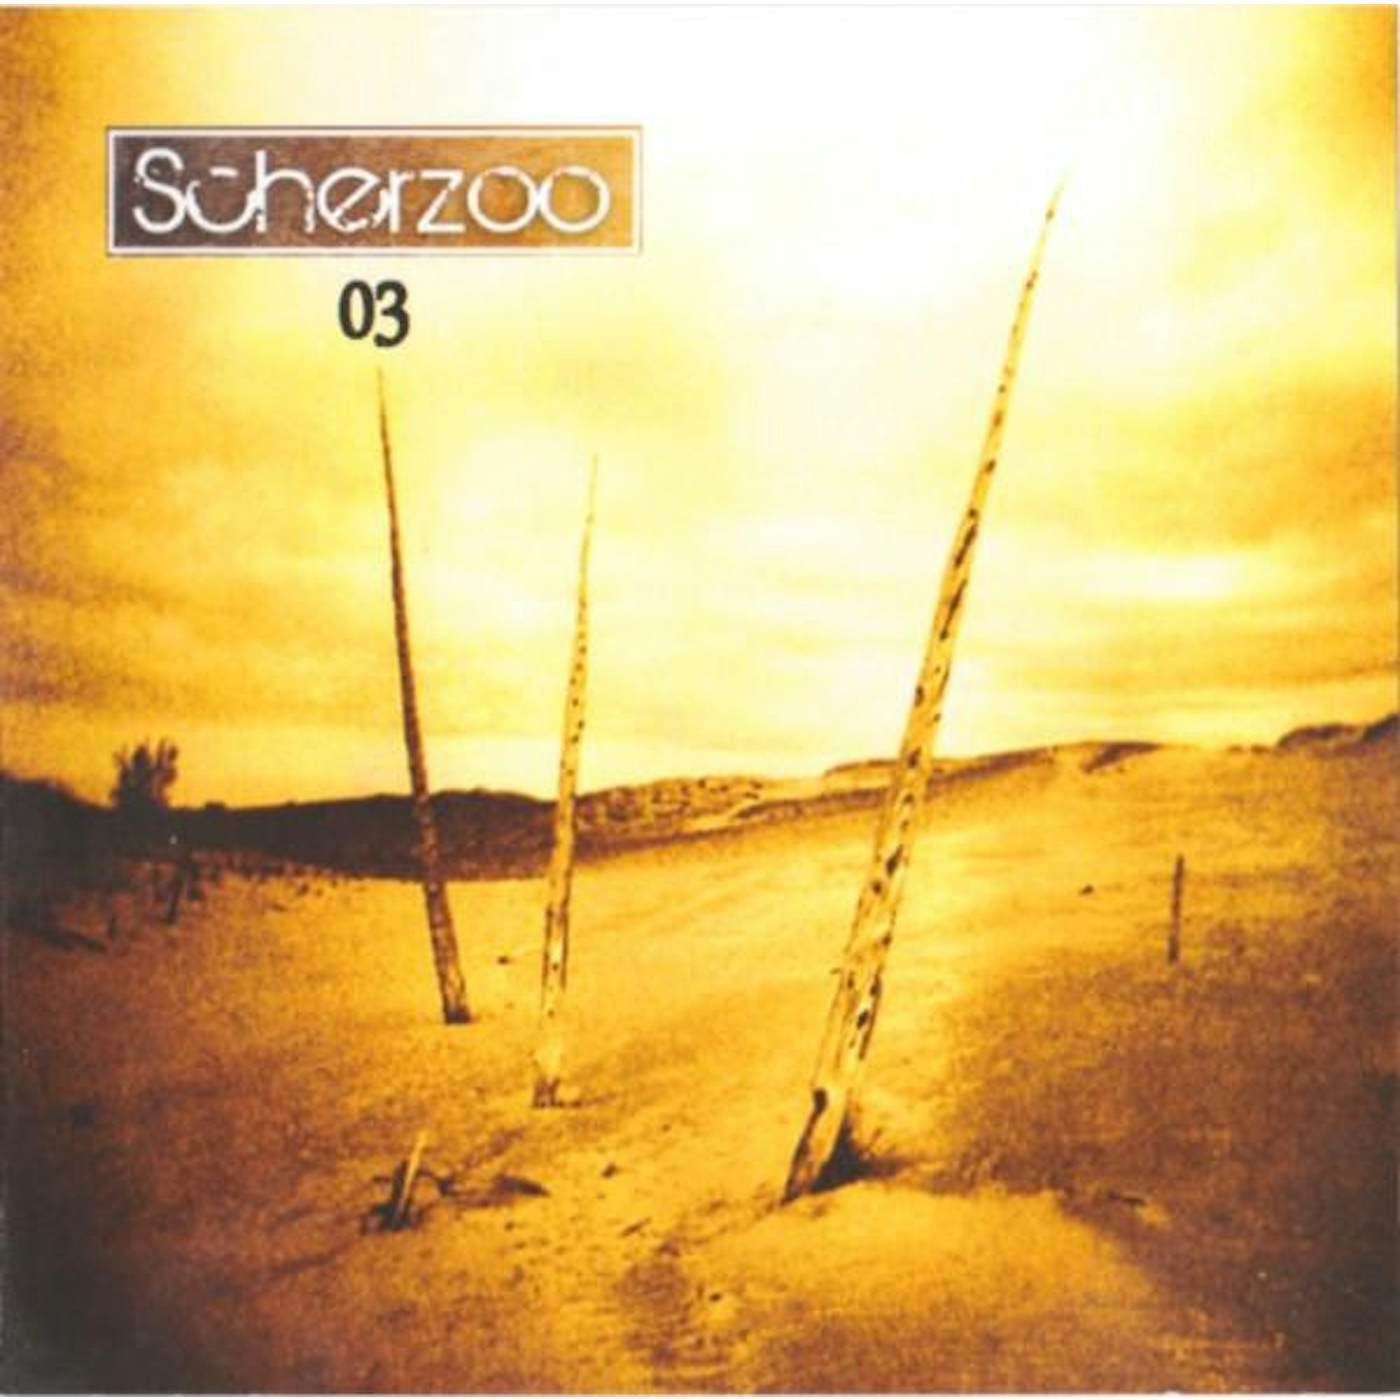 Scherzoo 03 CD